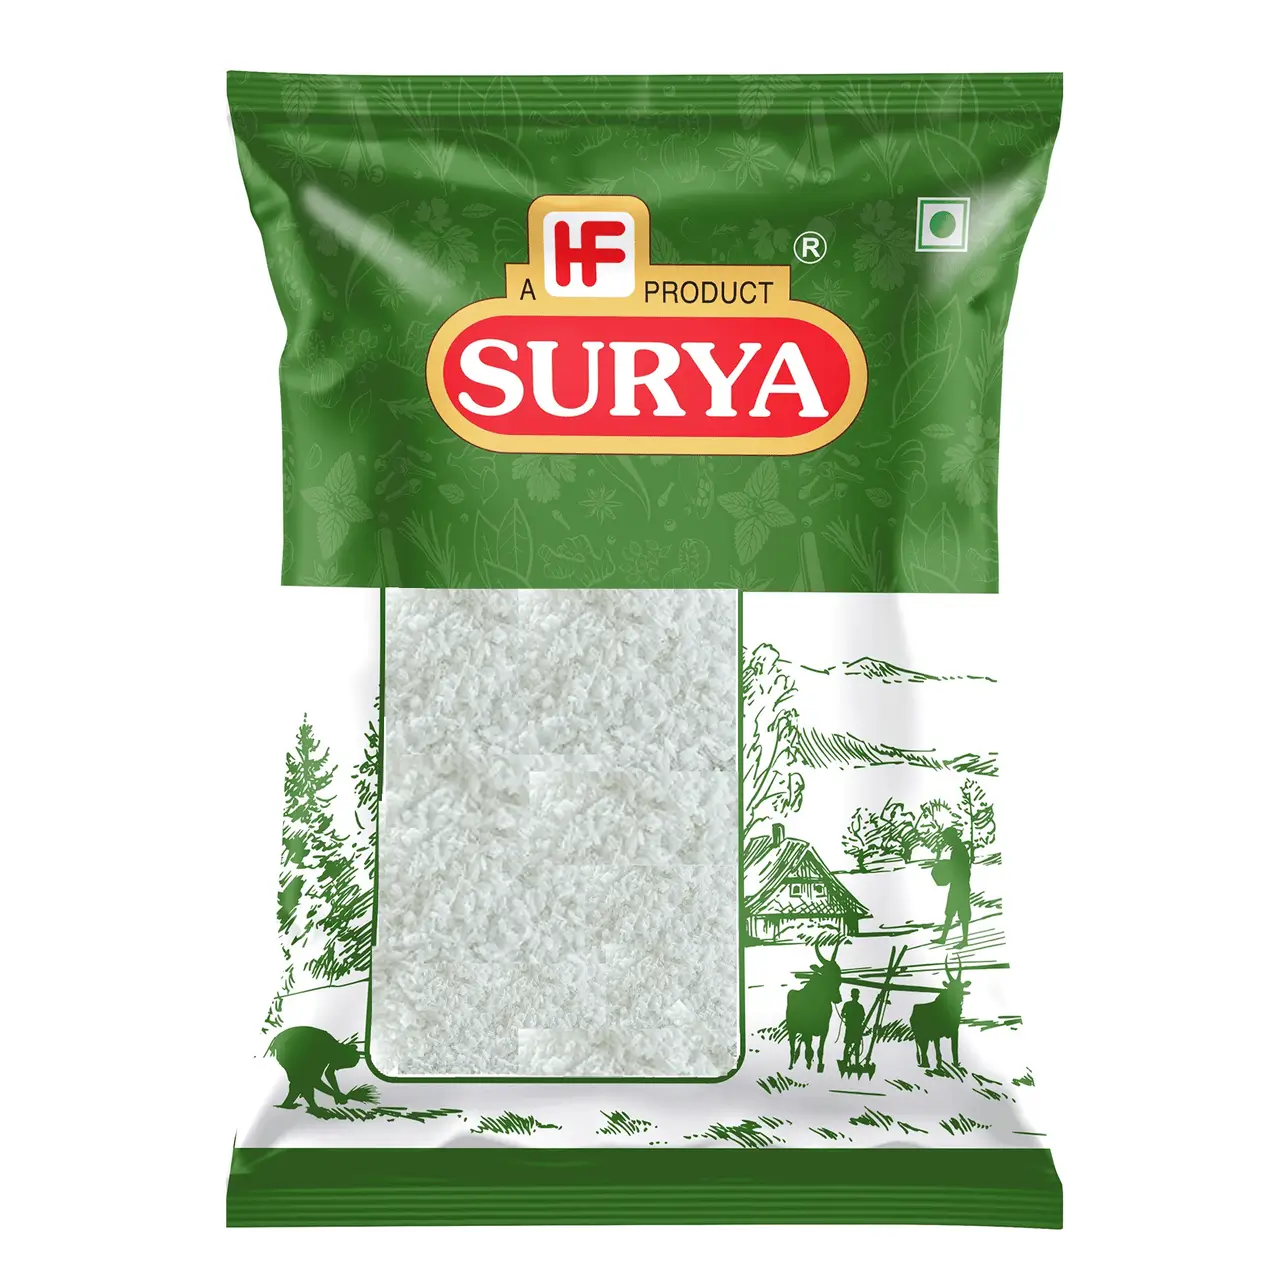 Surya - Dry Coconut Powder, 500 gm